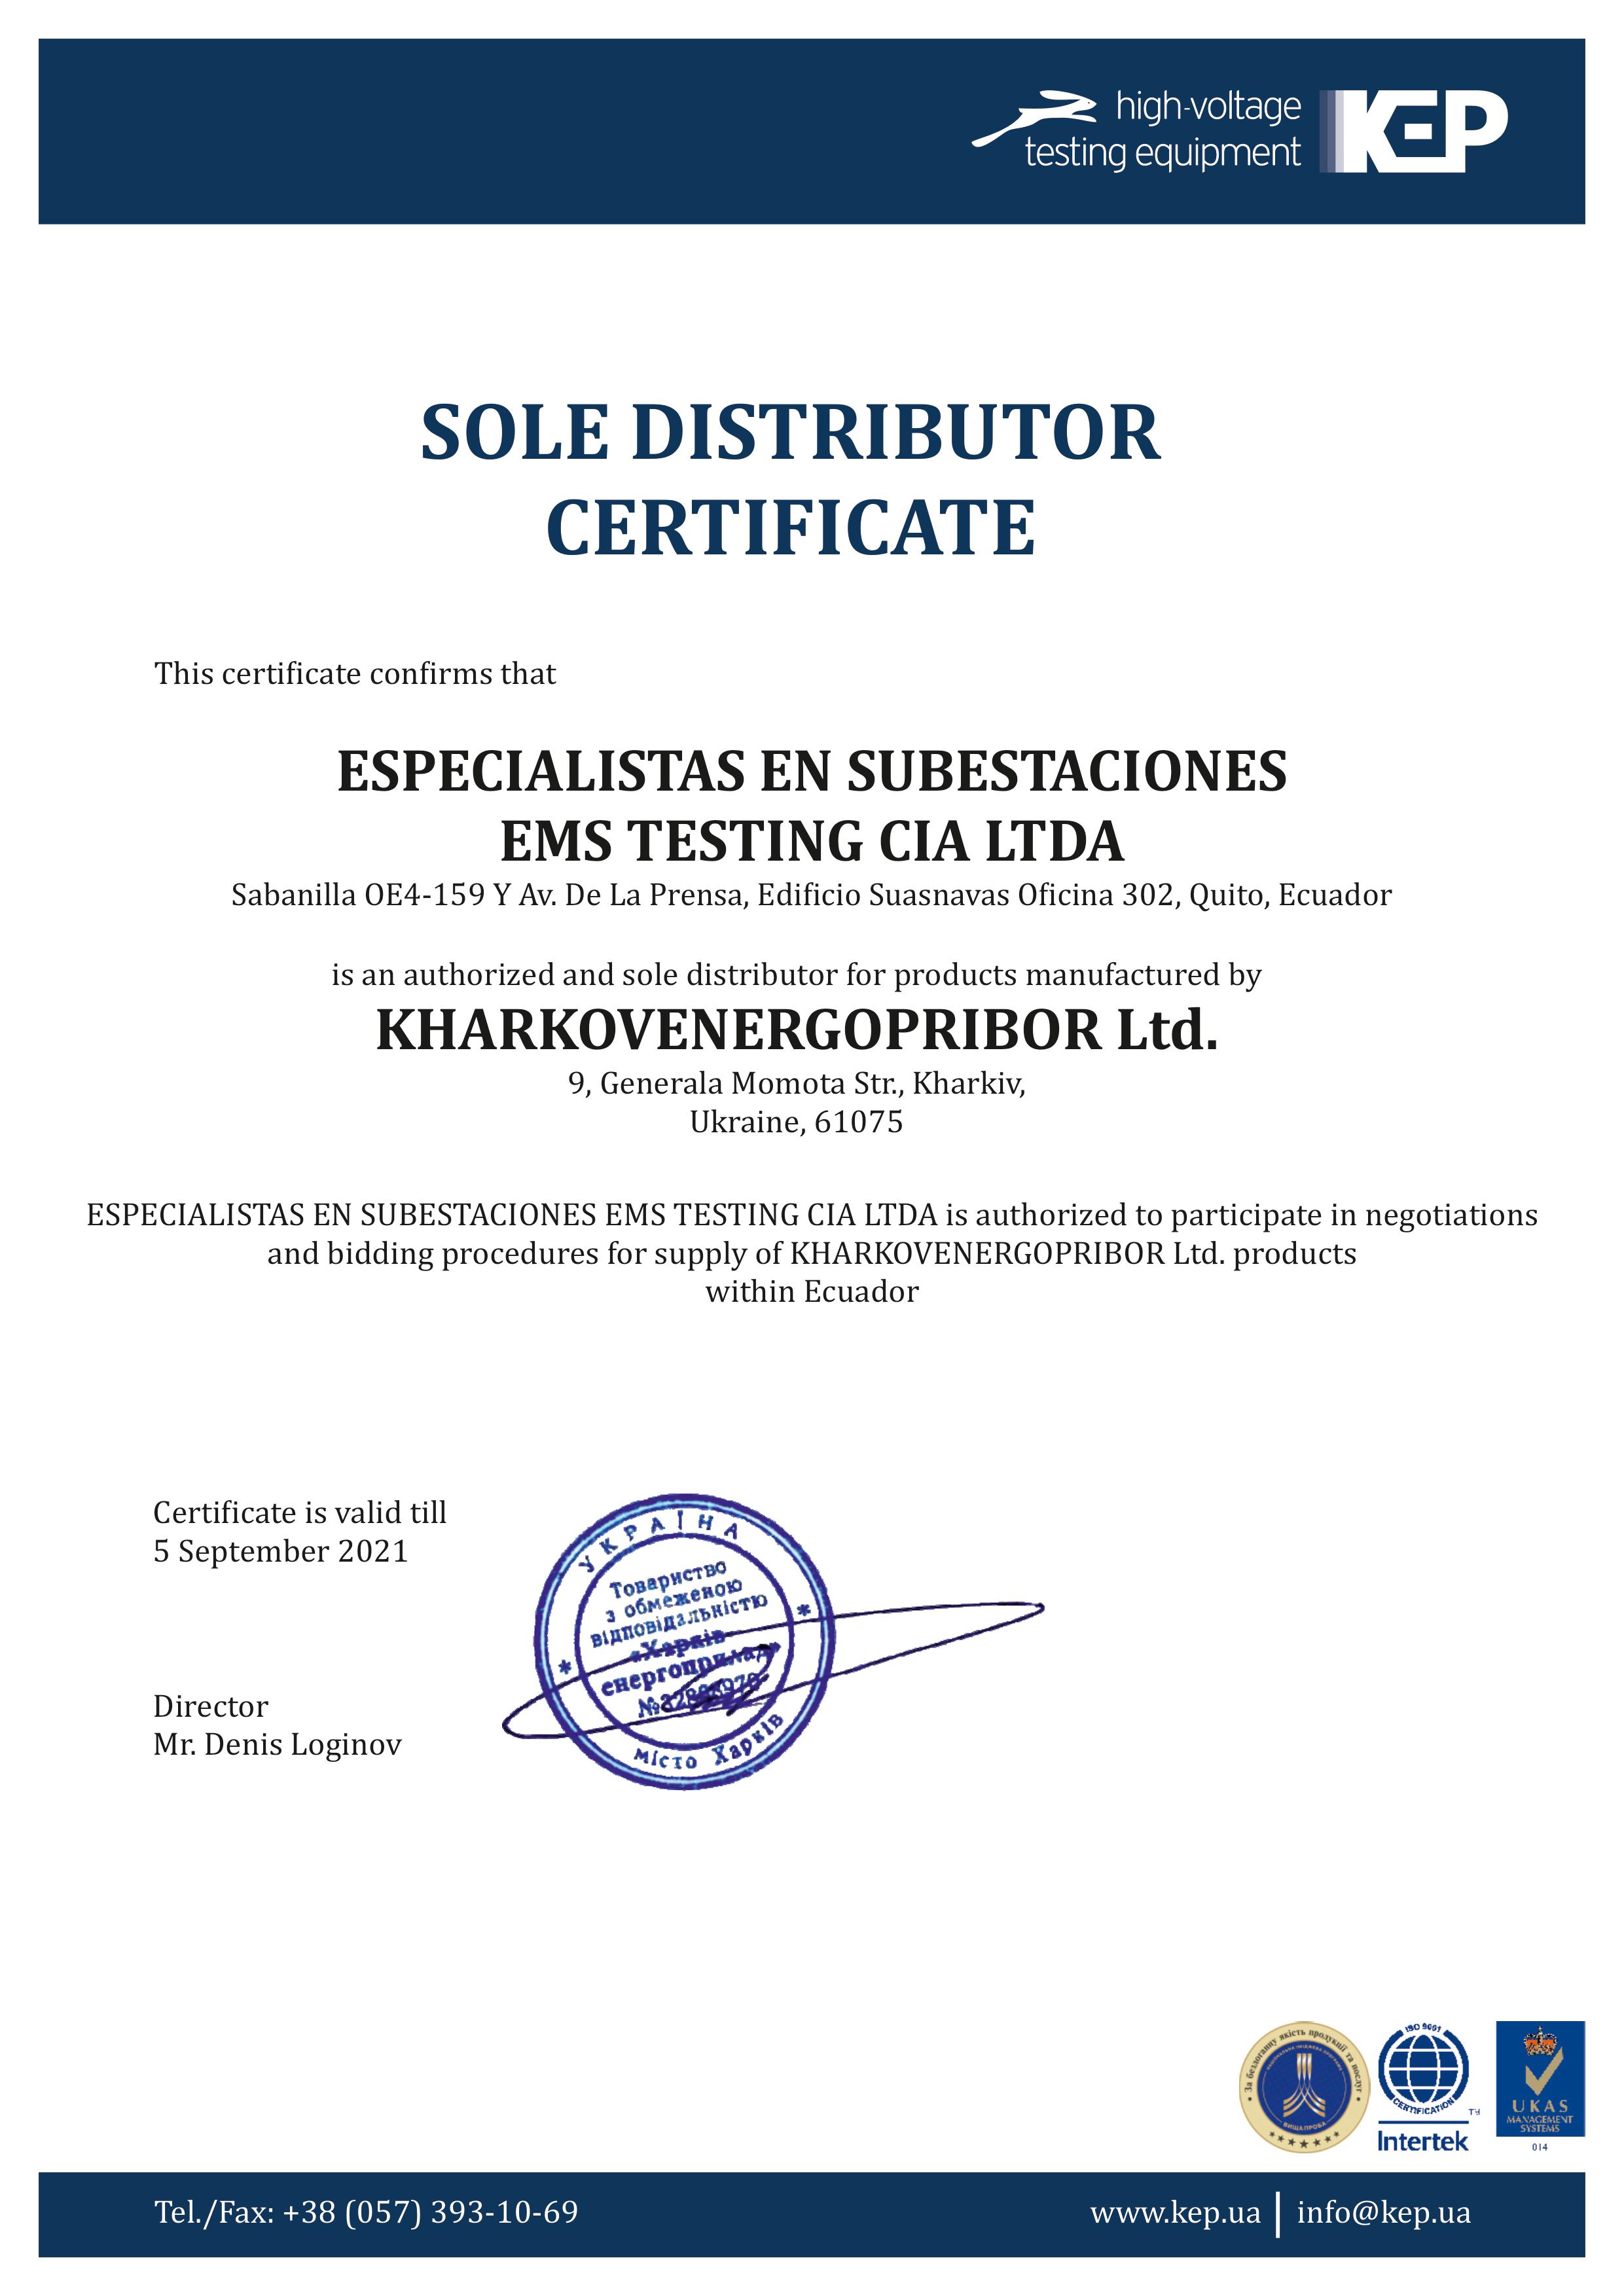 Официальным представителем KharkovEnergoPribor Ltd. в Колумбии